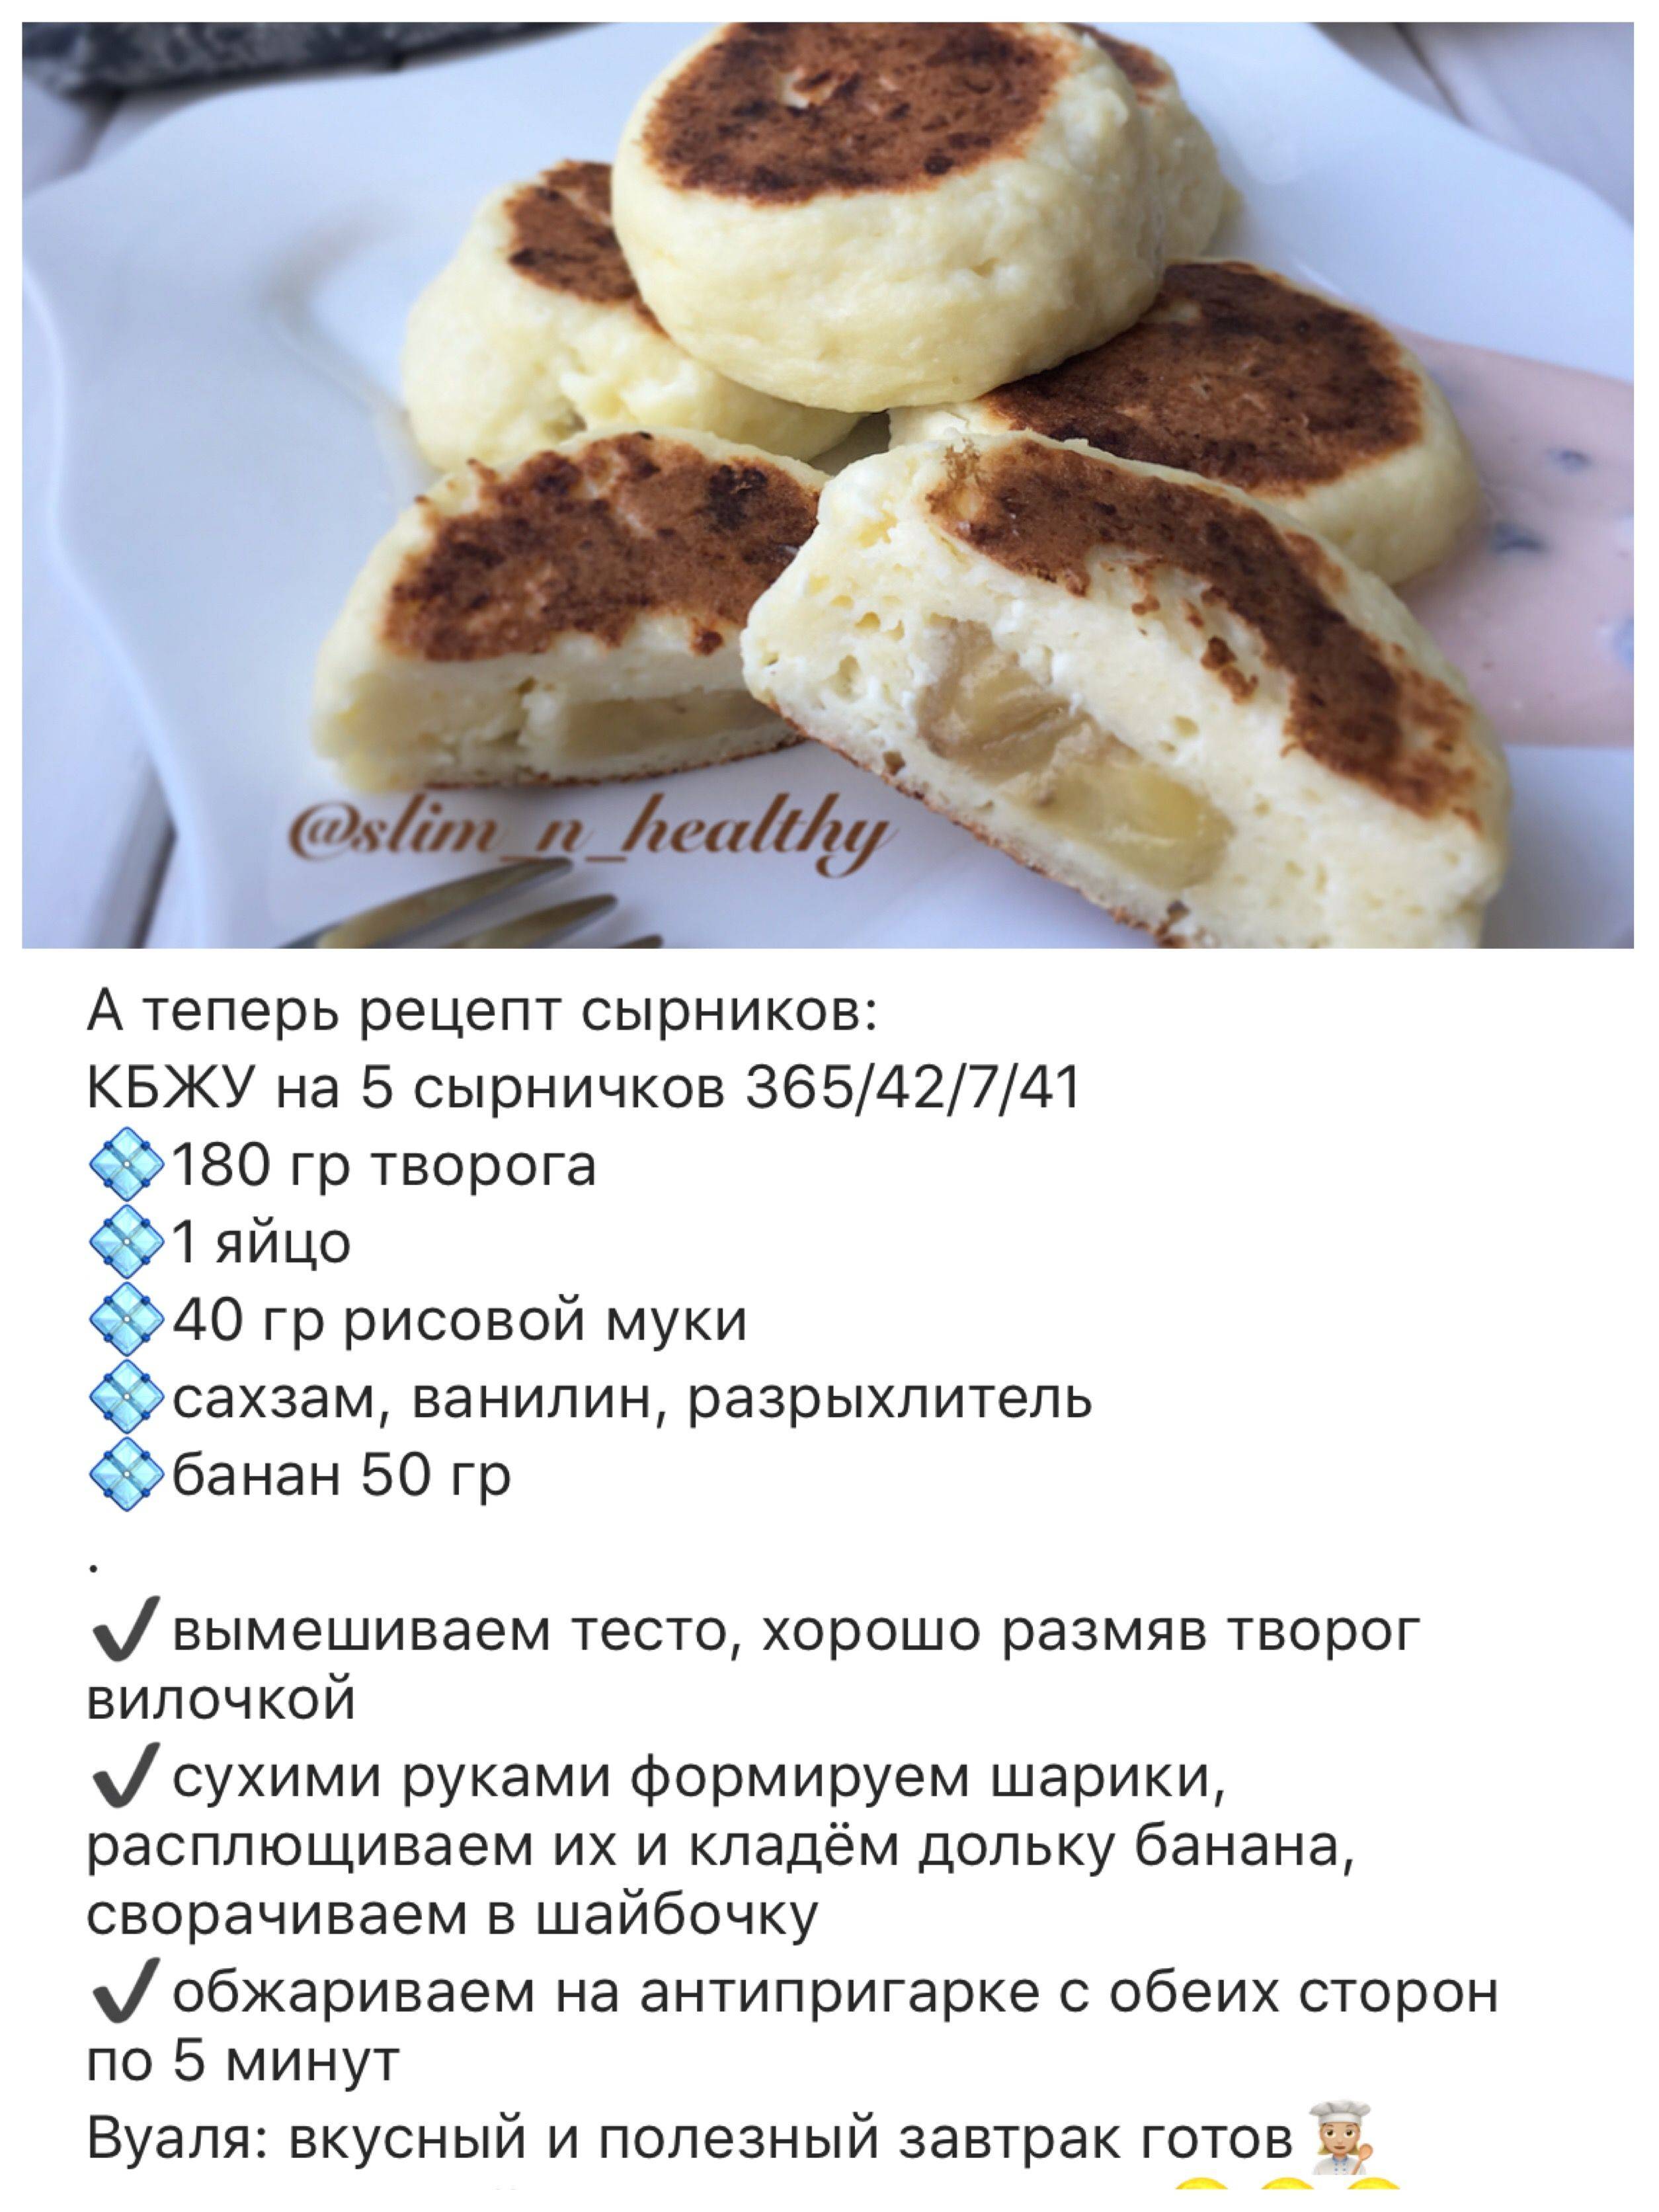 Рецепт как делать сырники из творога простой рецепт на сковороде пошаговый фото